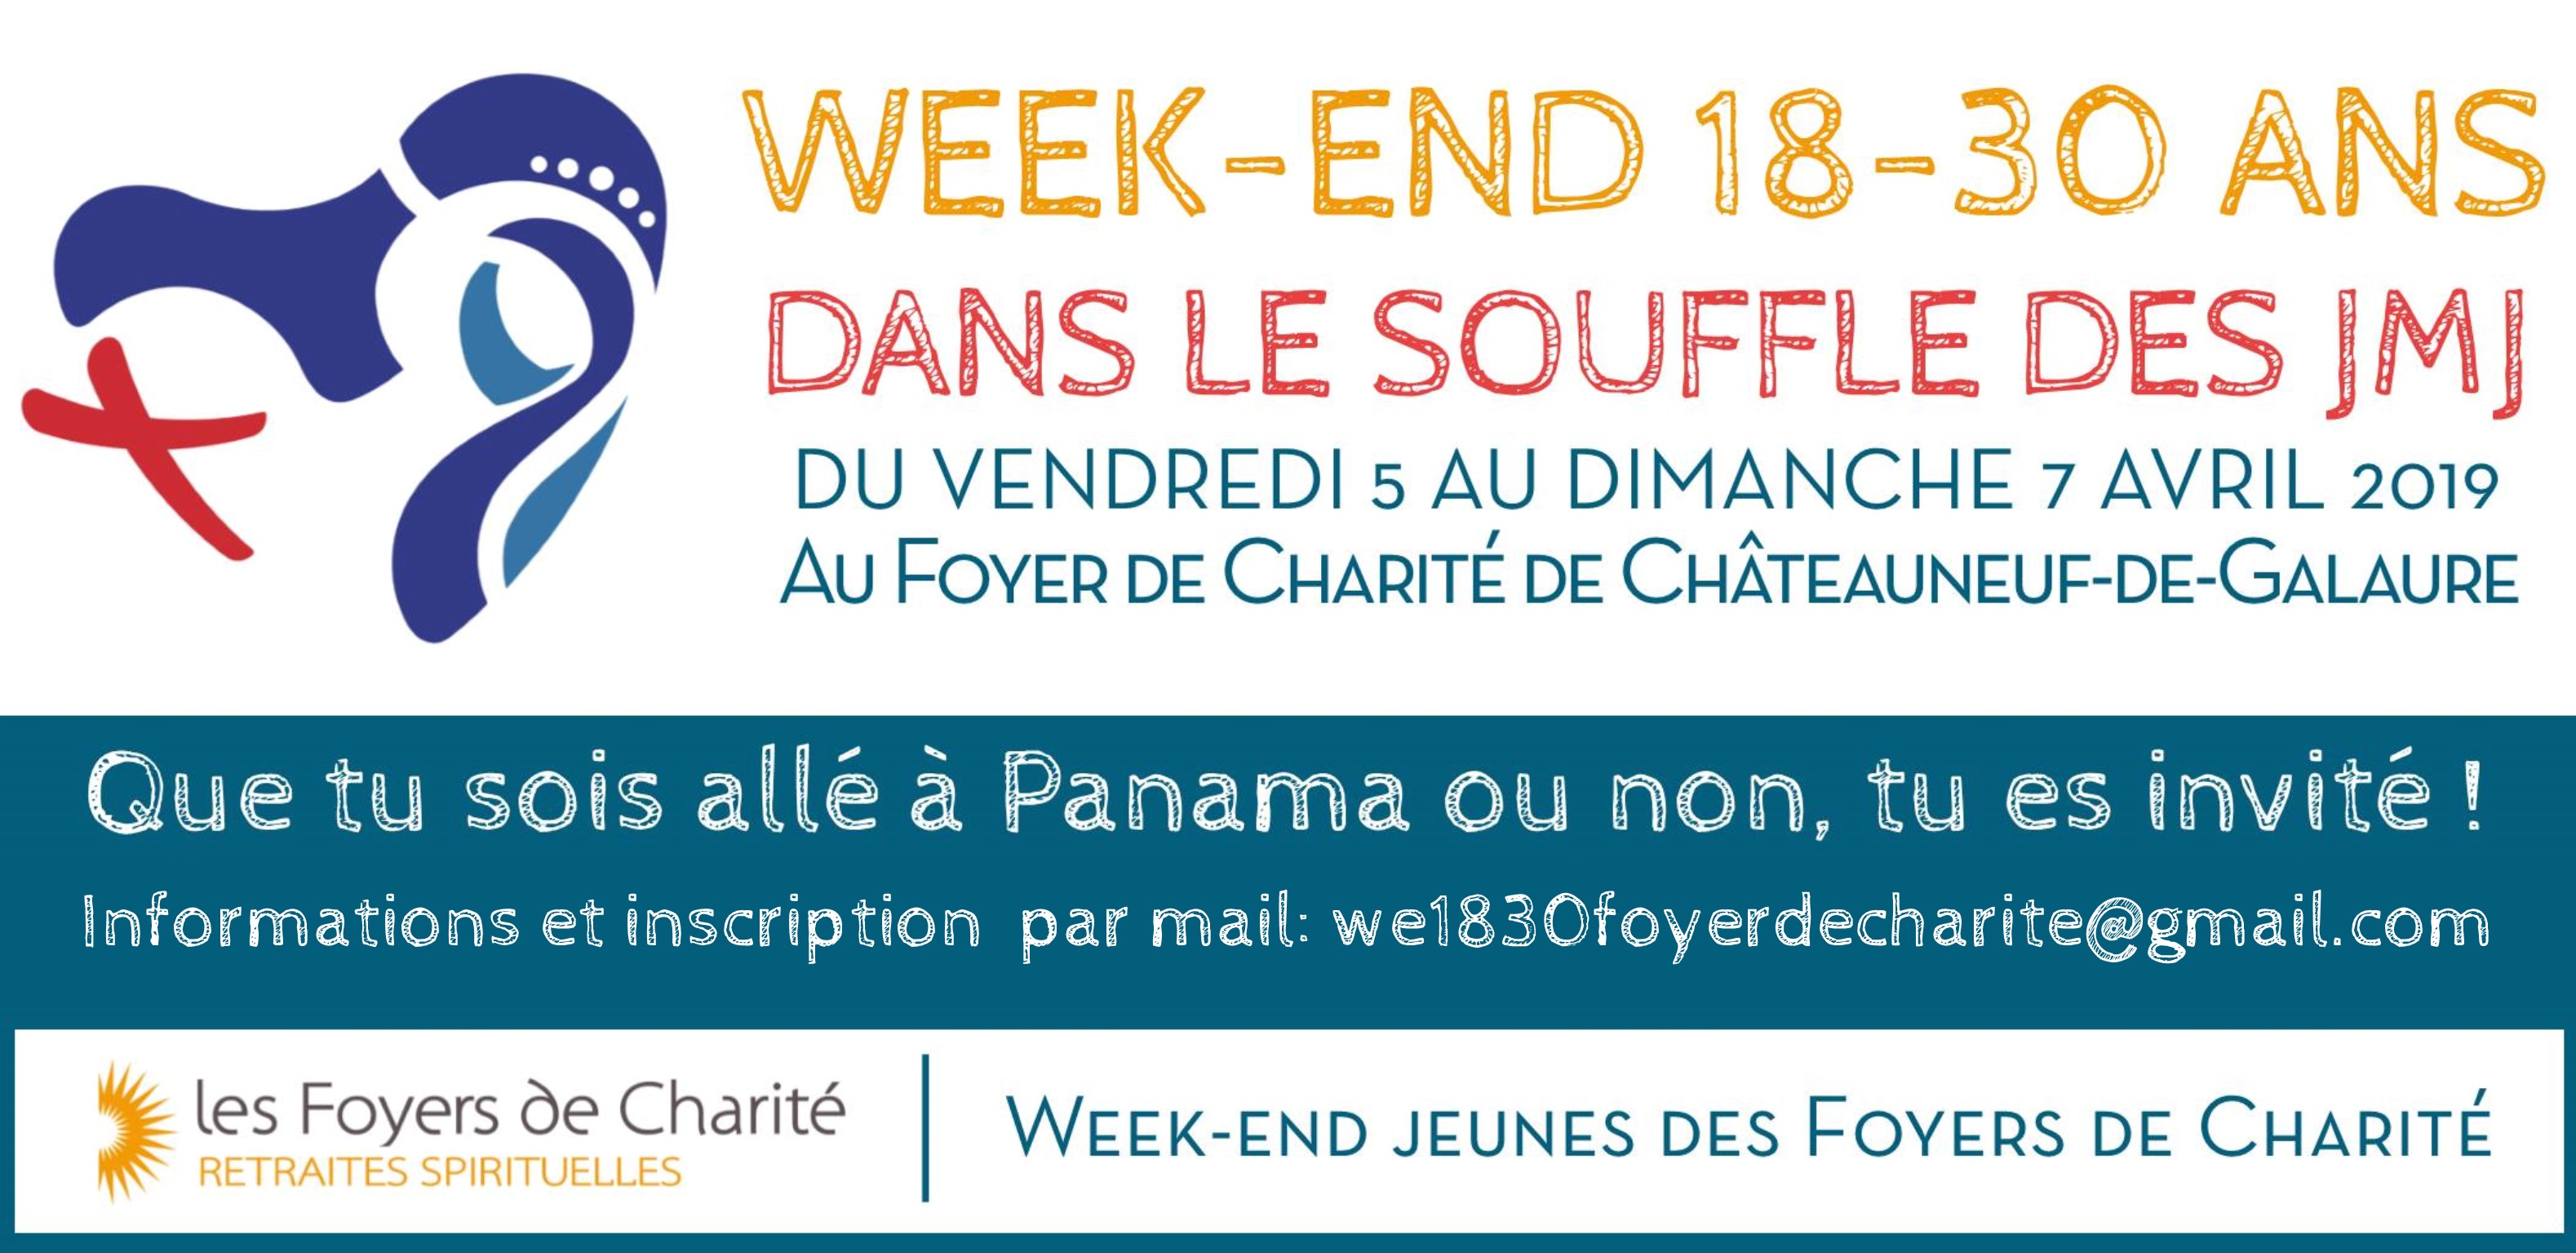 Week-end 18-30 ans dans le souffle des JMJ du 5 au 7 avril 2019 à Châteauneuf-de-Galaure (26)